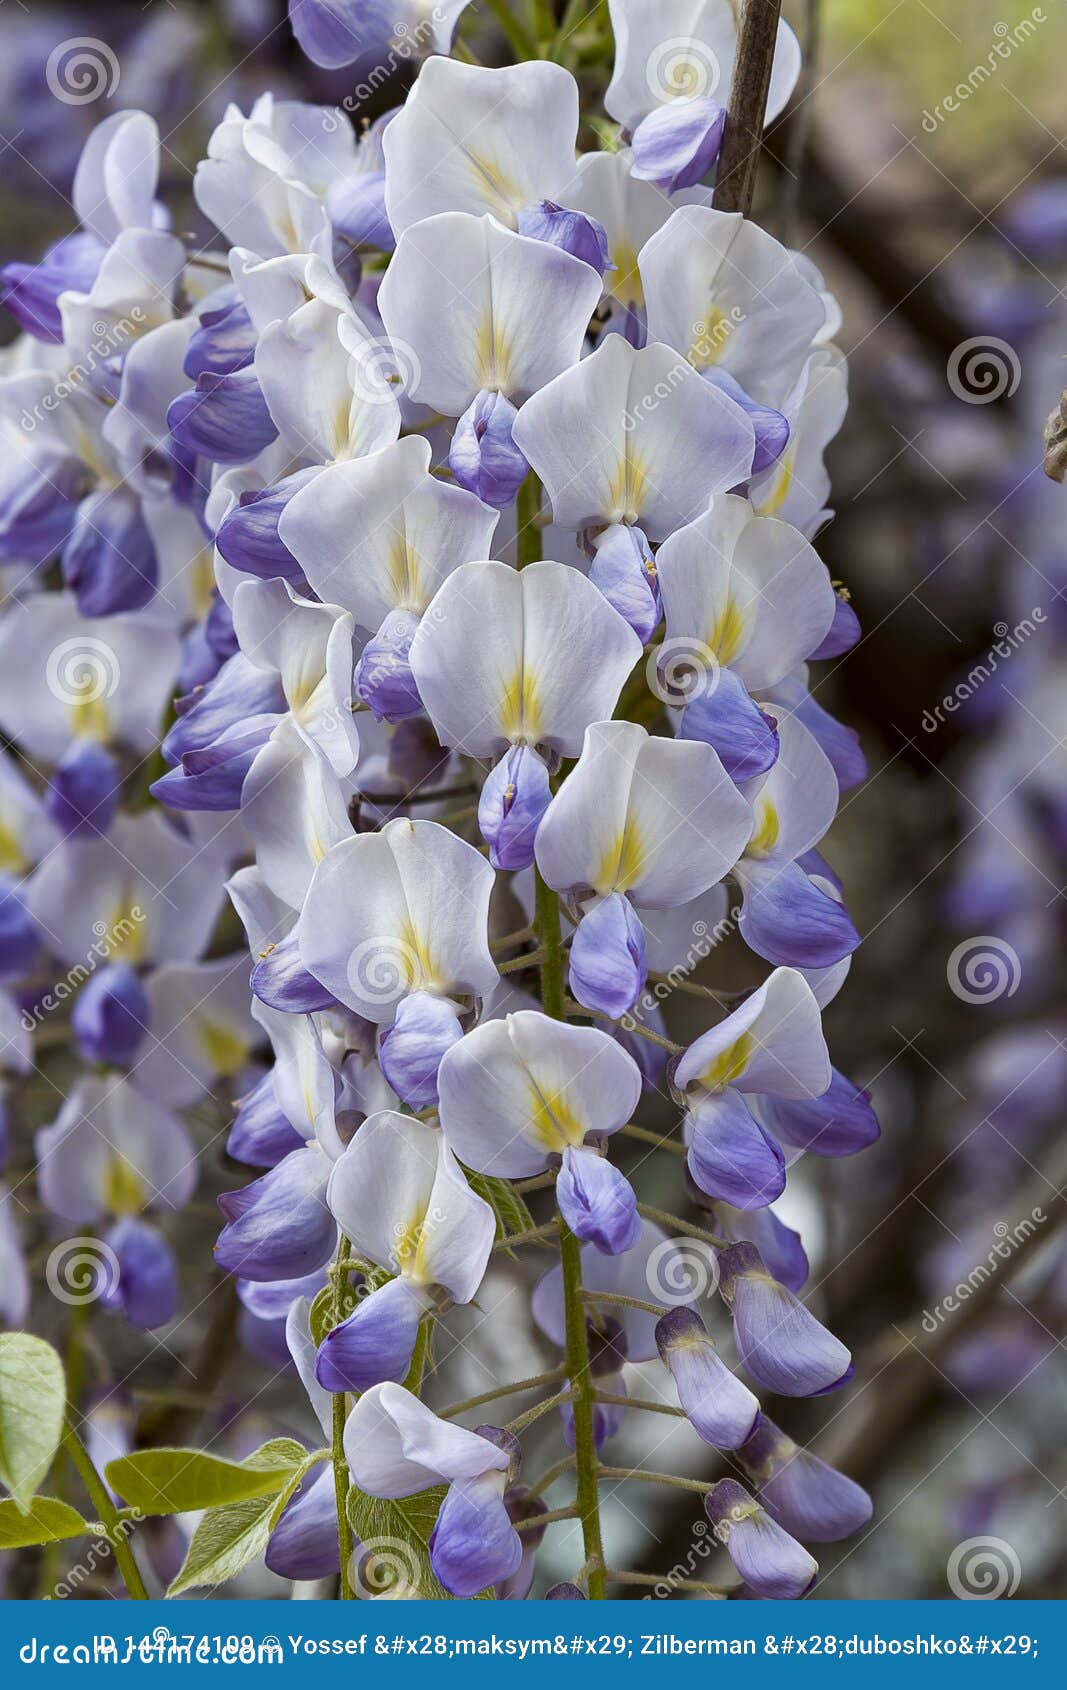 E Les Grandes Fleurs De Plantes Grimpantes De Vues Jaillissent, Mauve-clair,  Wysteria Image stock - Image du fleurs, place: 144174109